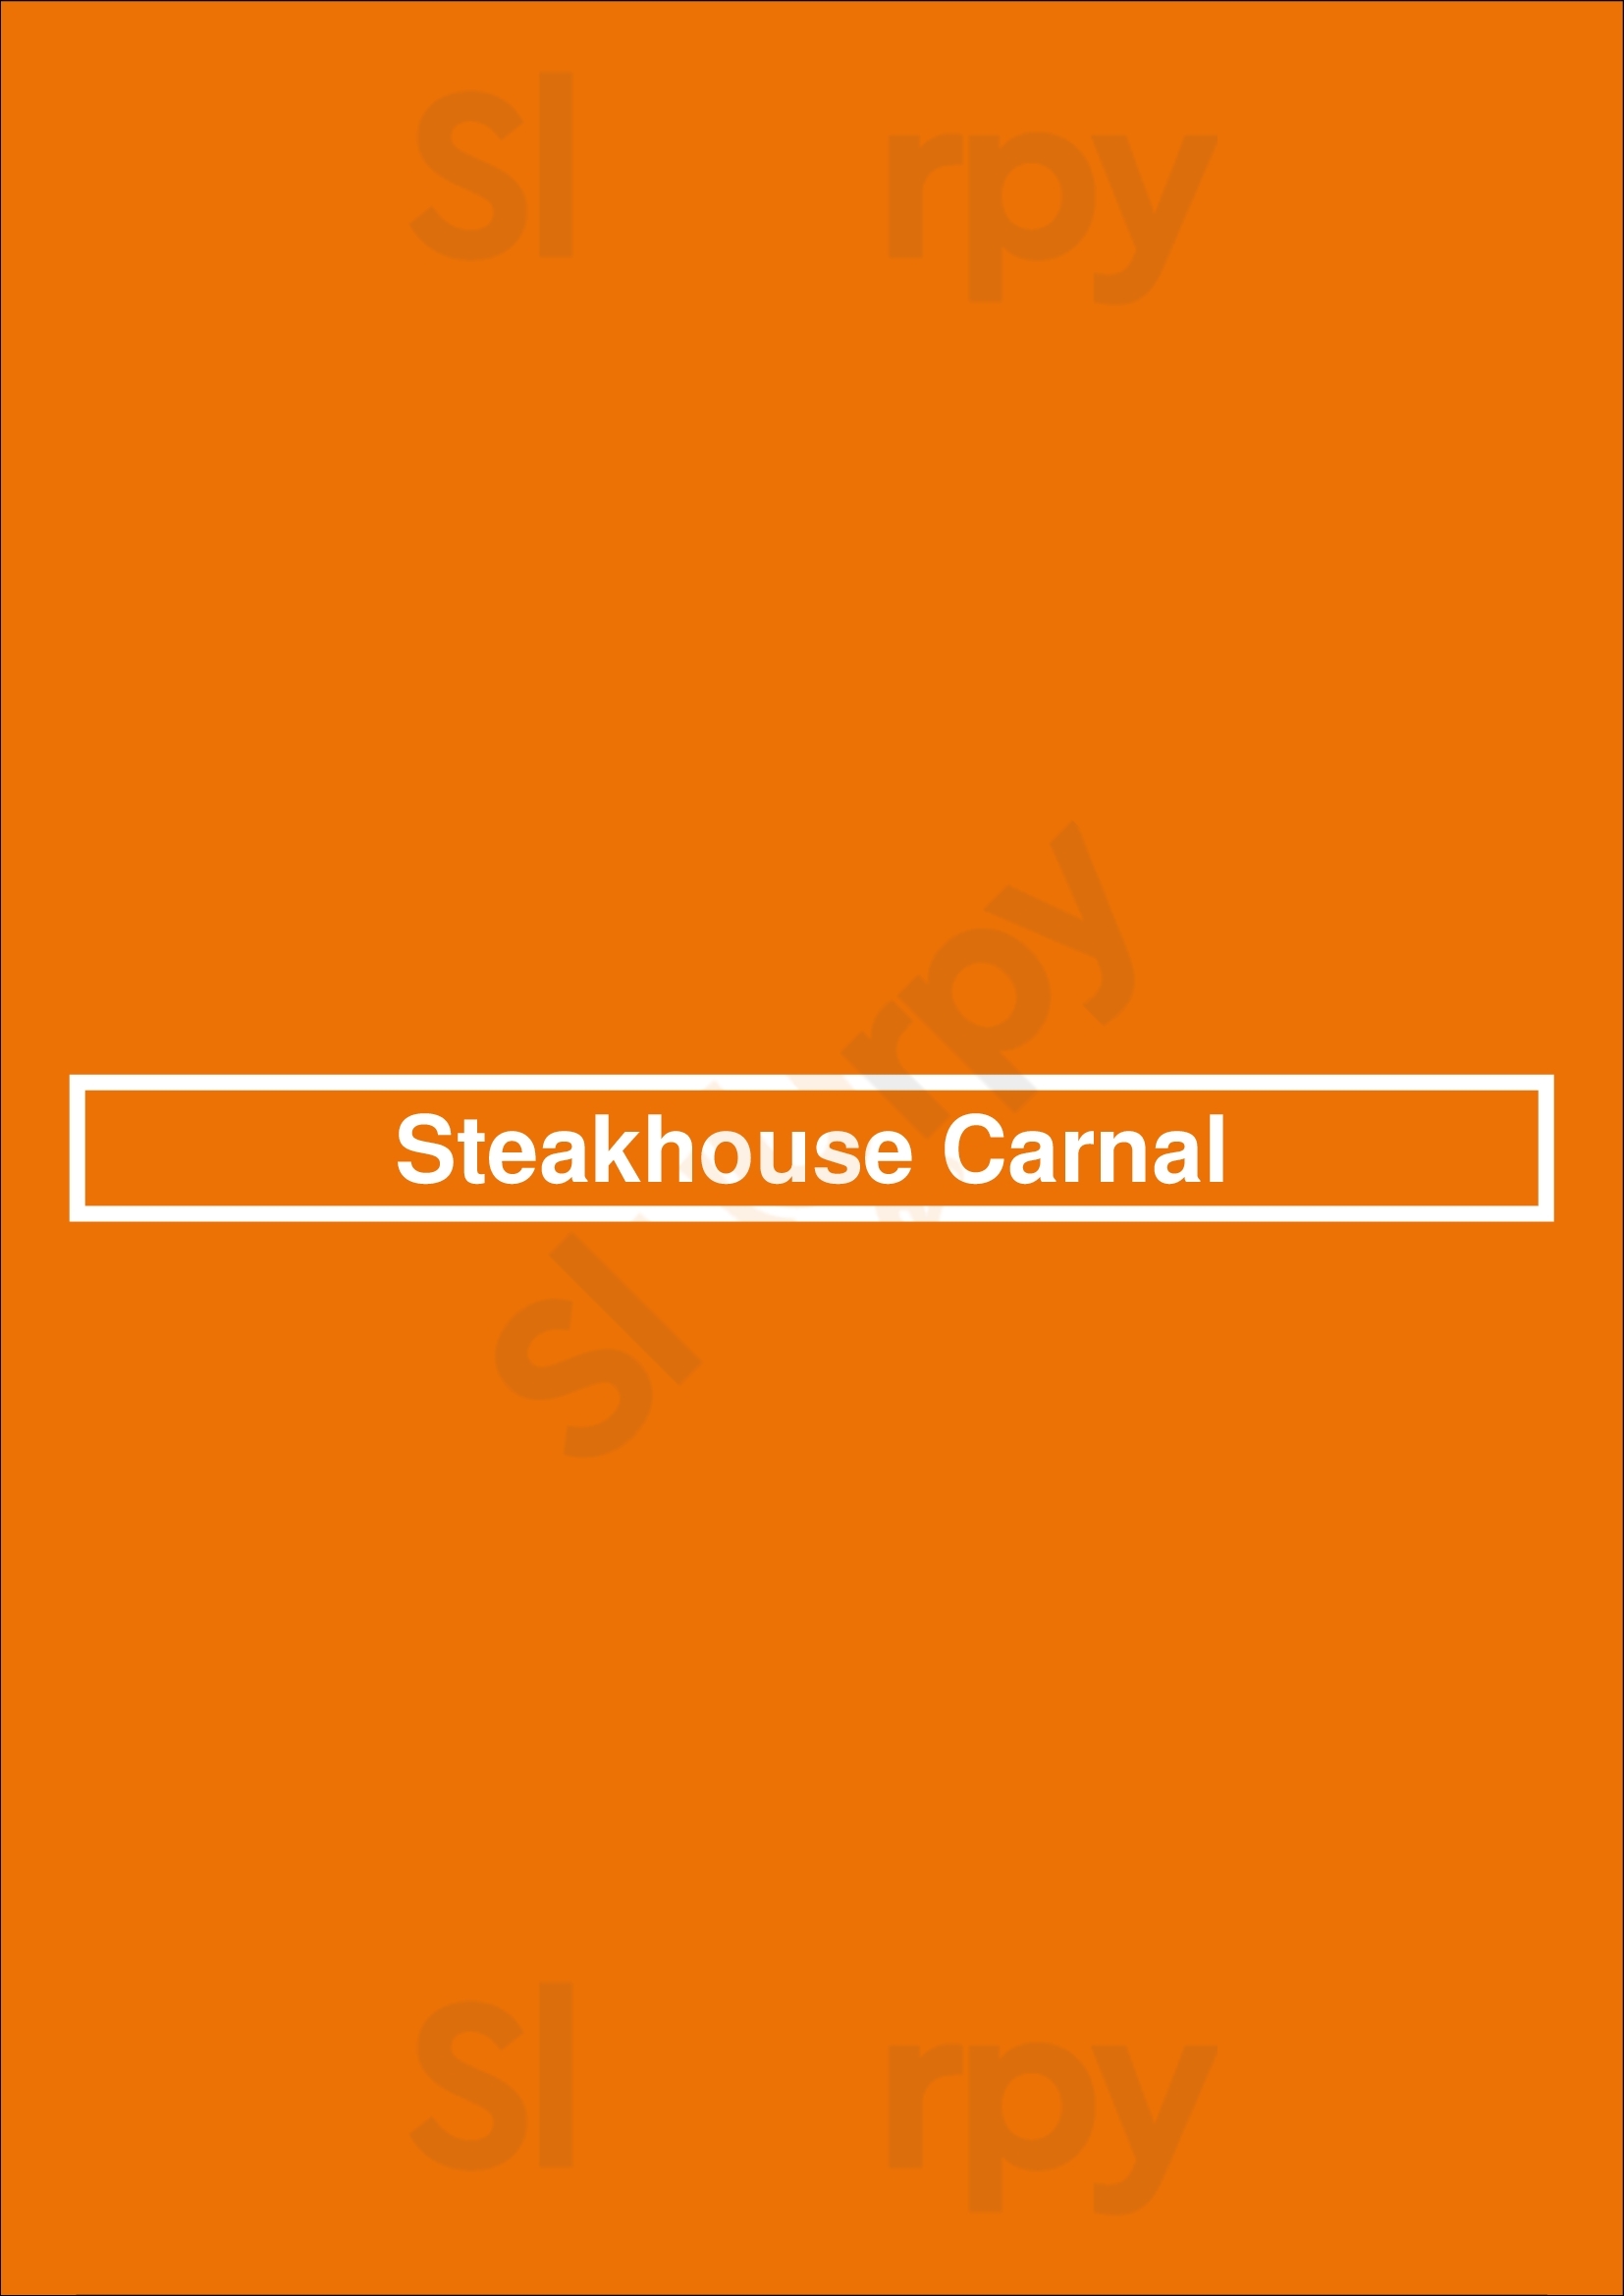 Steakhouse Carnal Maastricht Menu - 1